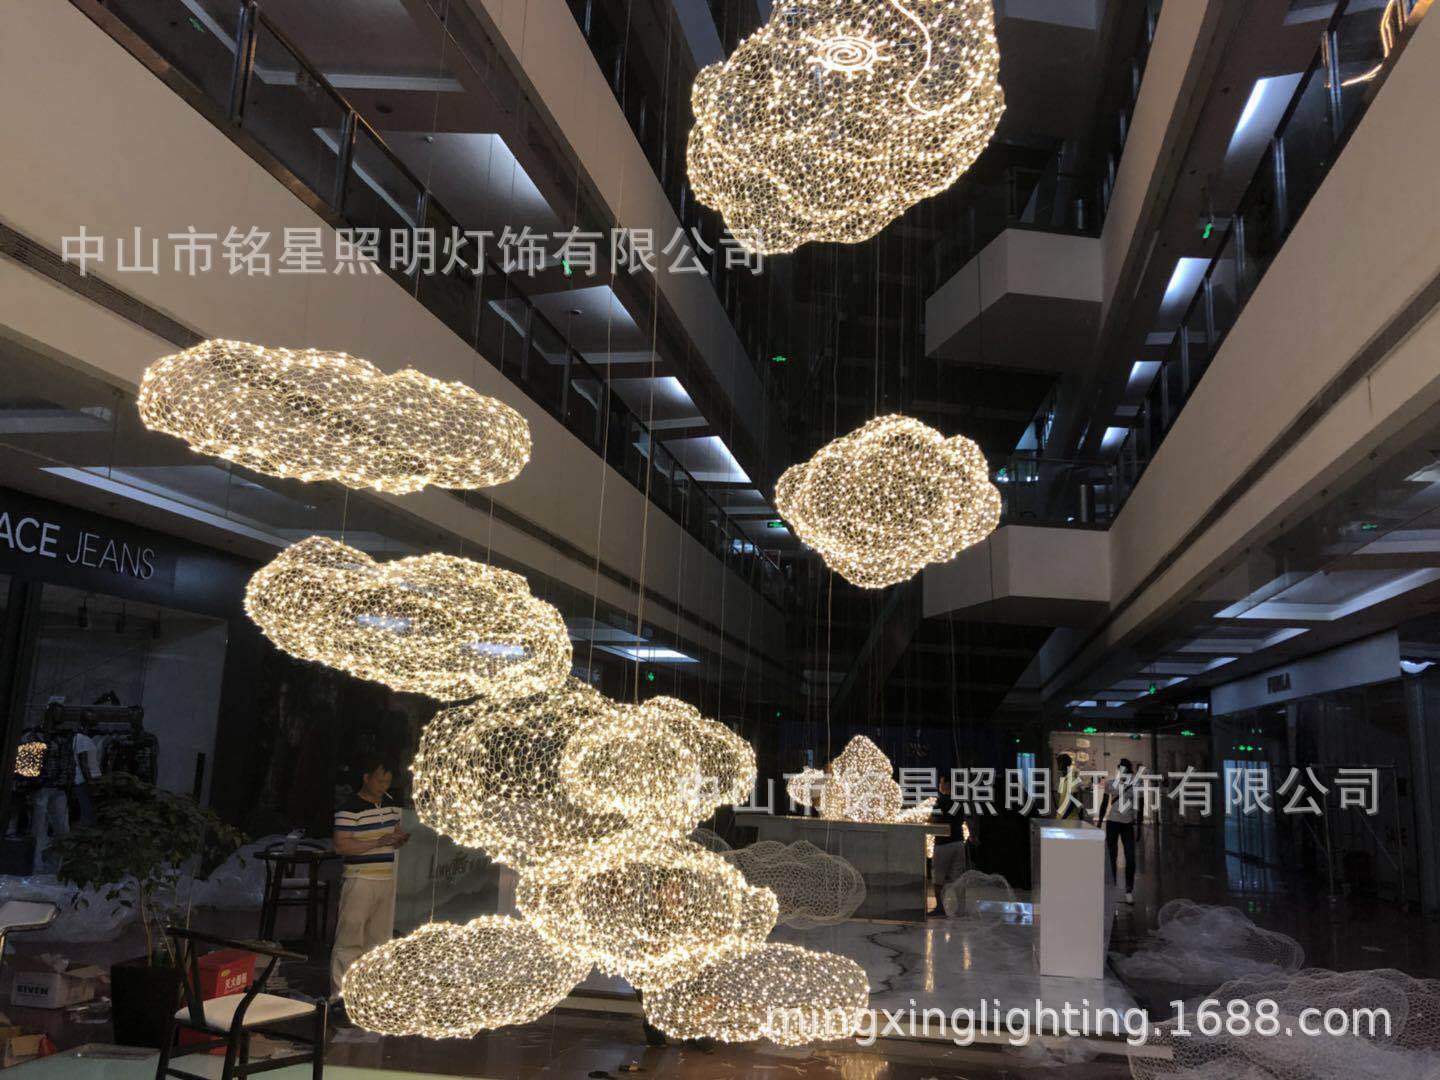 中国供应商铭星照明灯饰有限公司全新LED云朵满天星专业生产厂家示例图7